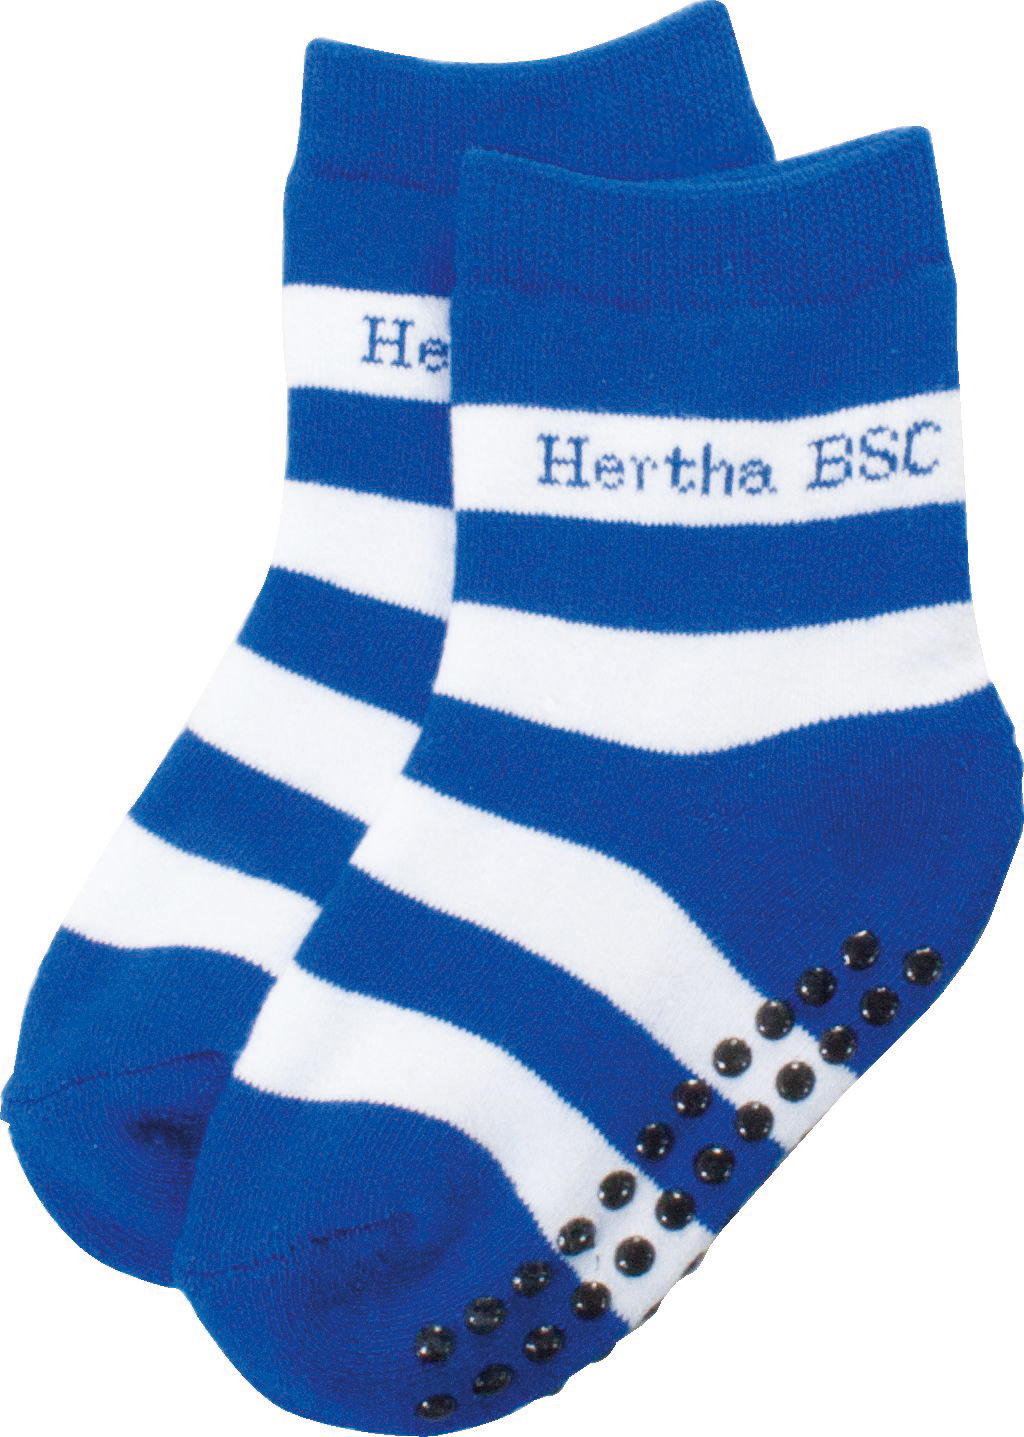 BSC Socken BSC HERTHA Hertha Berlin